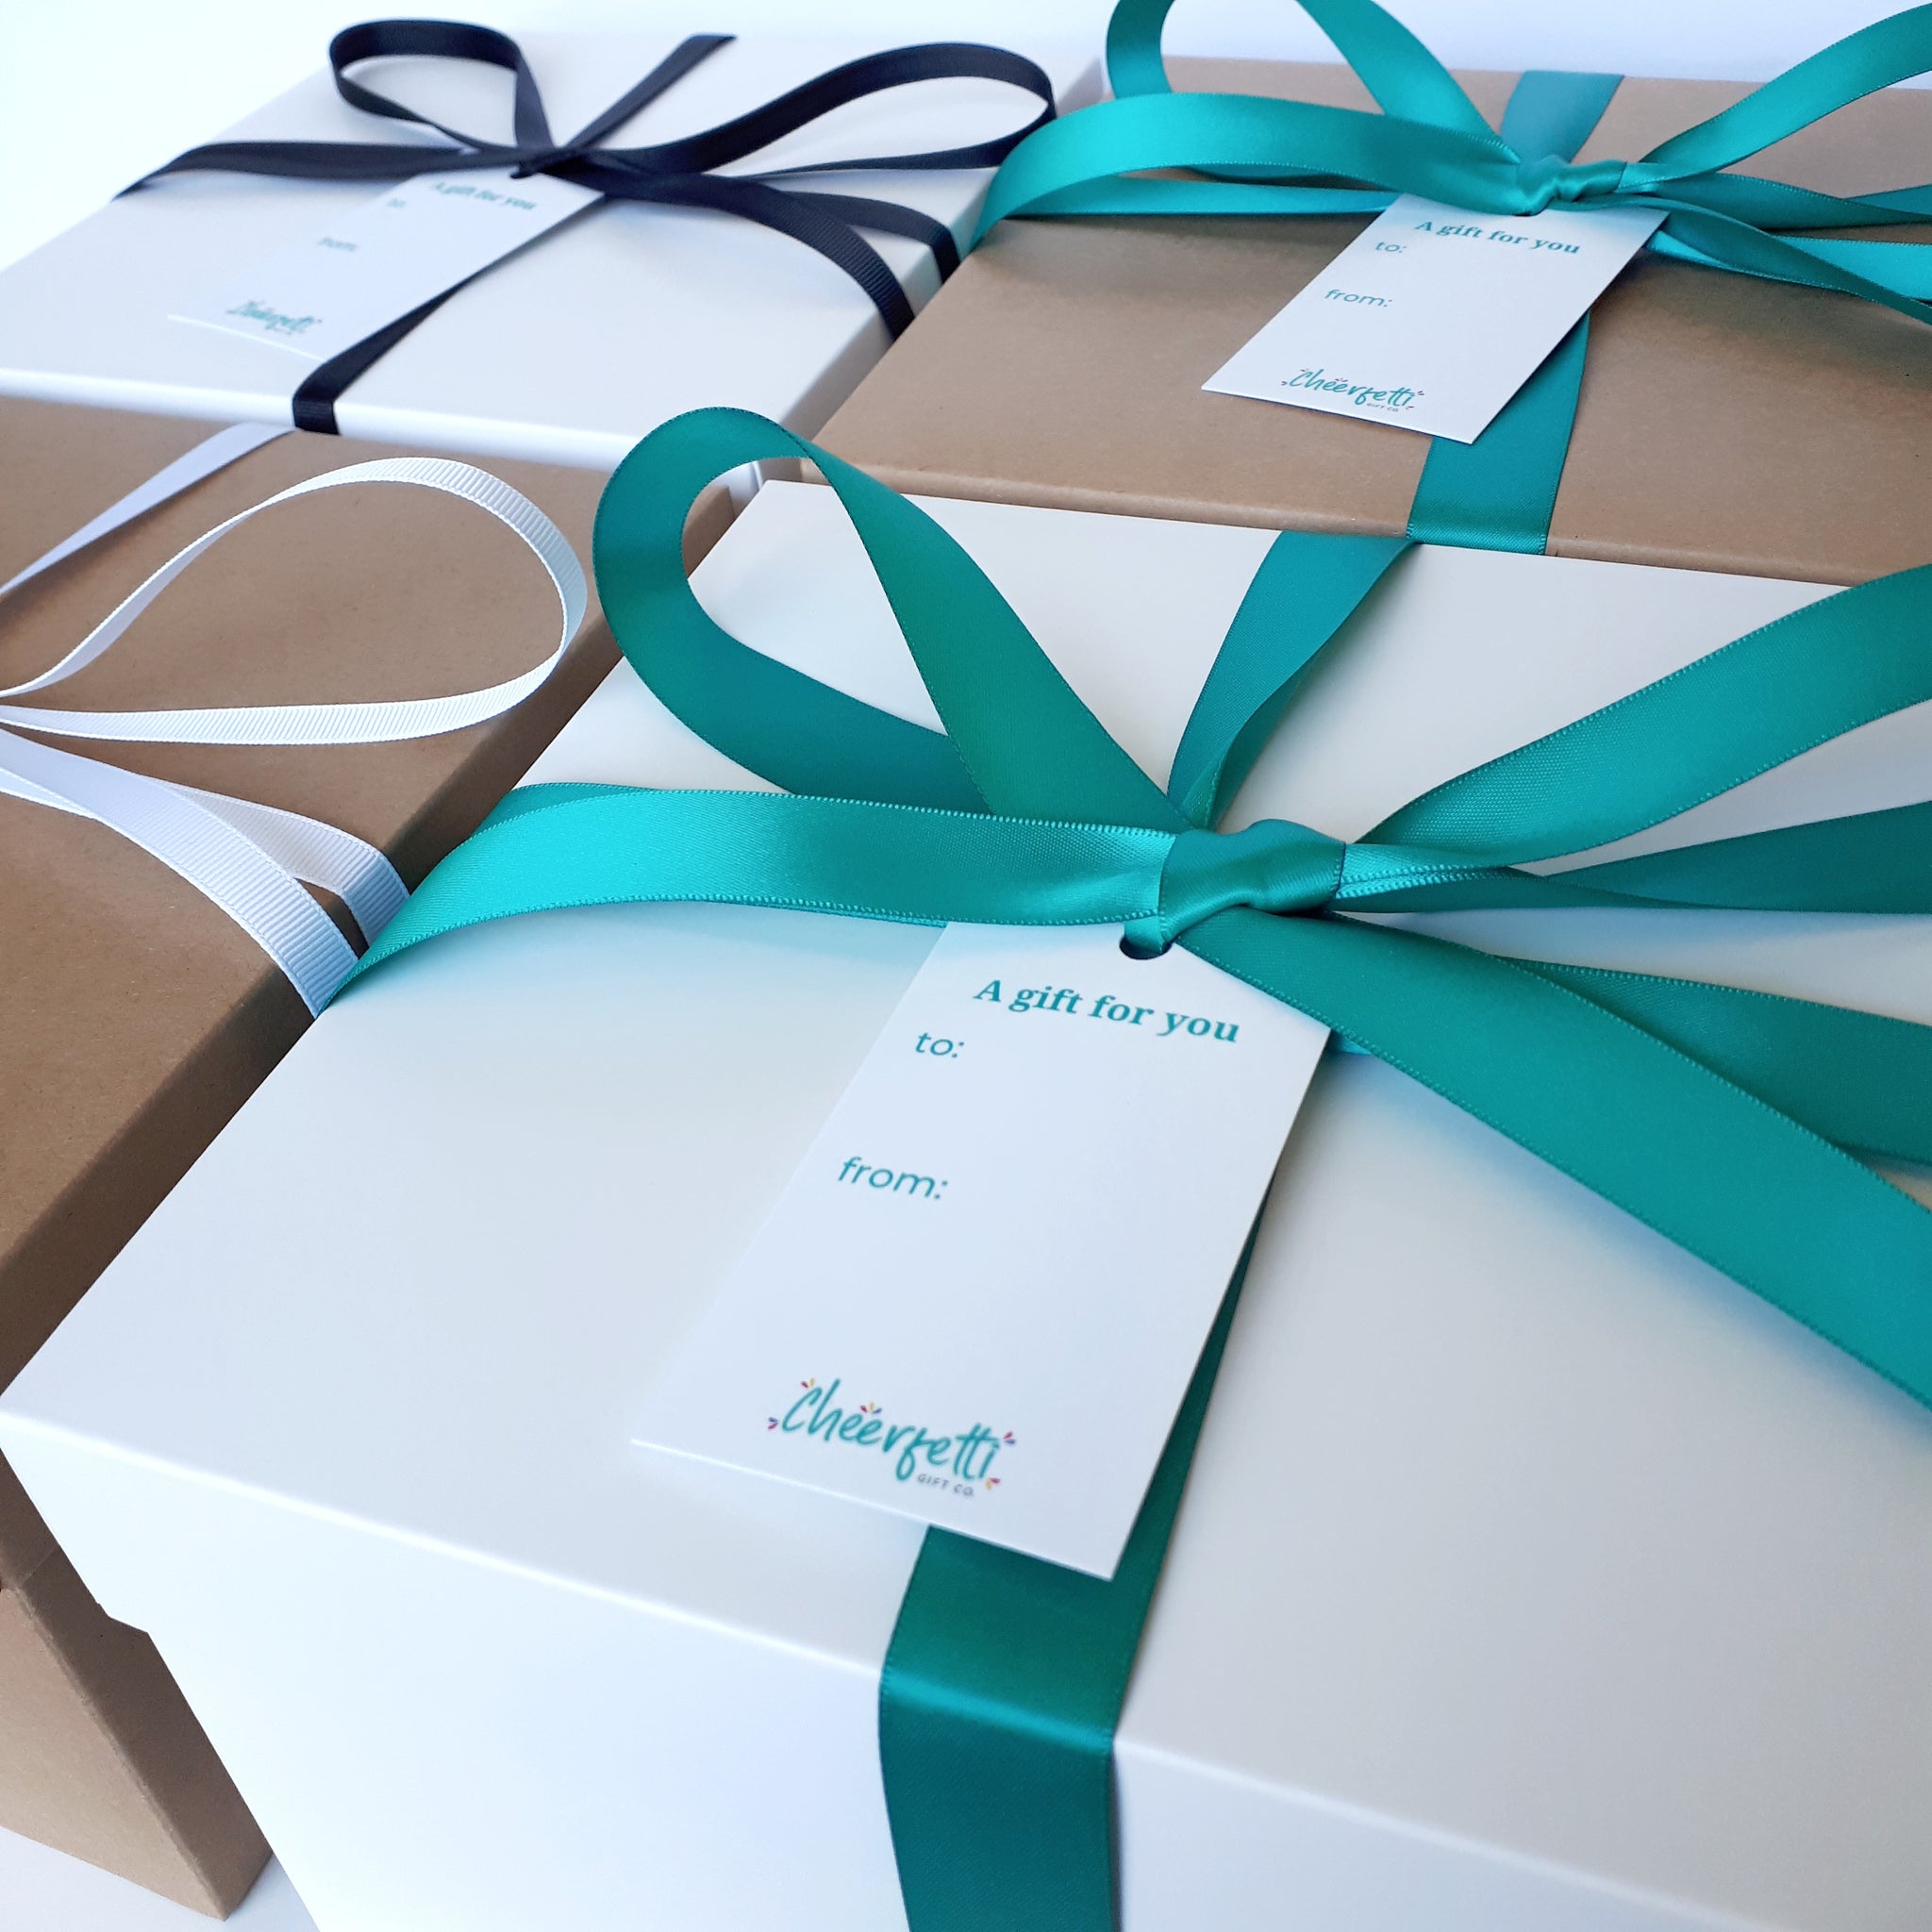 Happy Birthday Gift Box, Custom Birthday Gift Box, Gift Ideas, Happy Birthday  Gift Box, Happy Birthday Gift Basket, Birthday Gift Ideas -  Canada